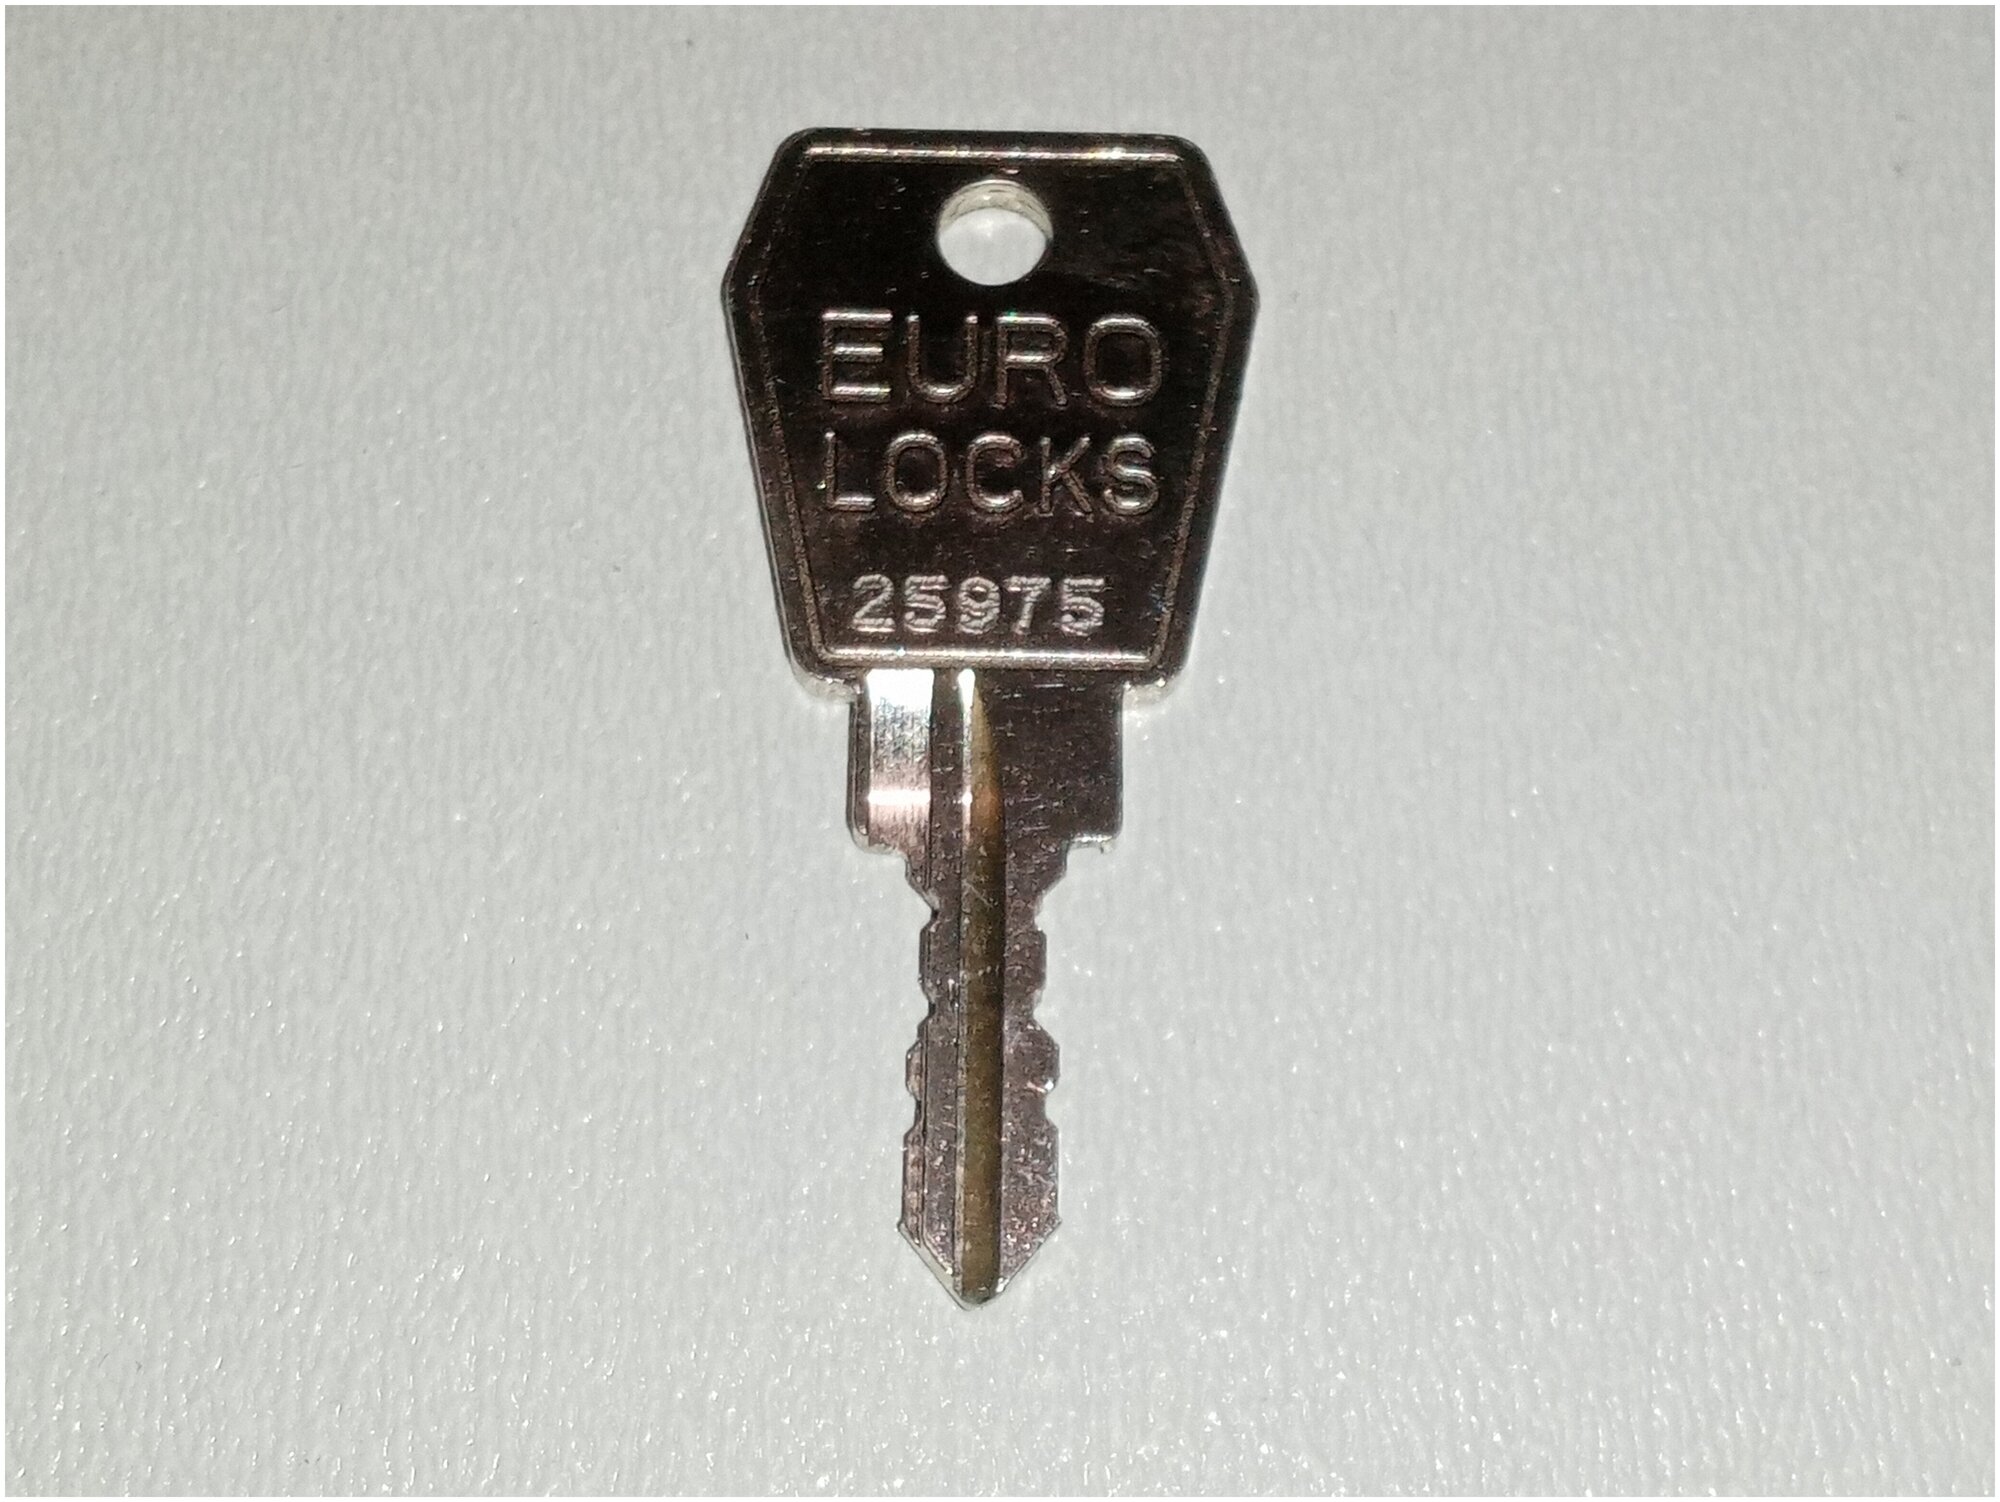 Ключ личины Автобокса-Багажника Euro Locks №25975